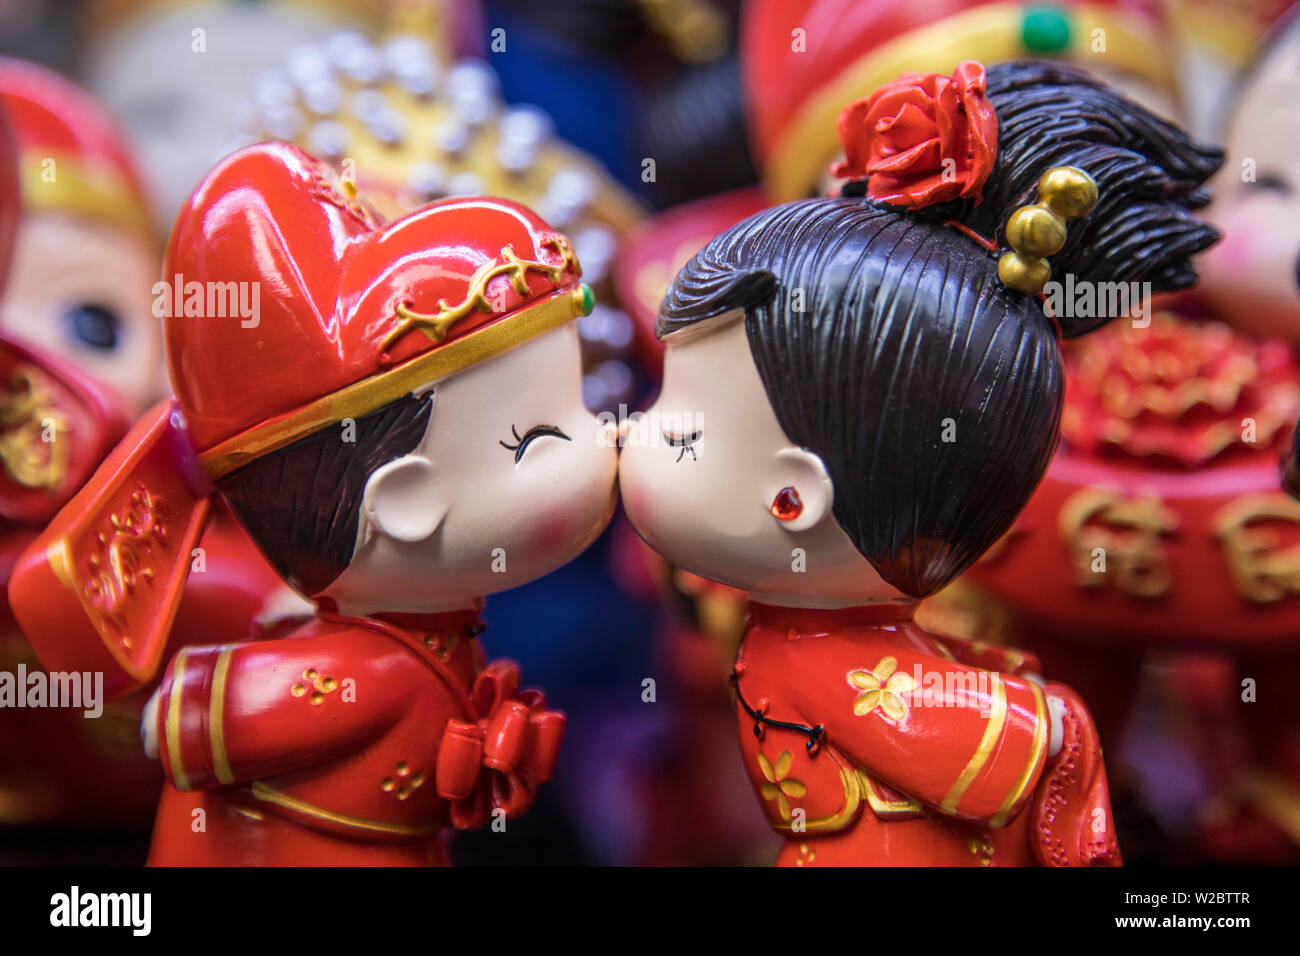 Junge und Mädchen Ornamente küssen, Old City Market, Shanghai, China Stockfoto